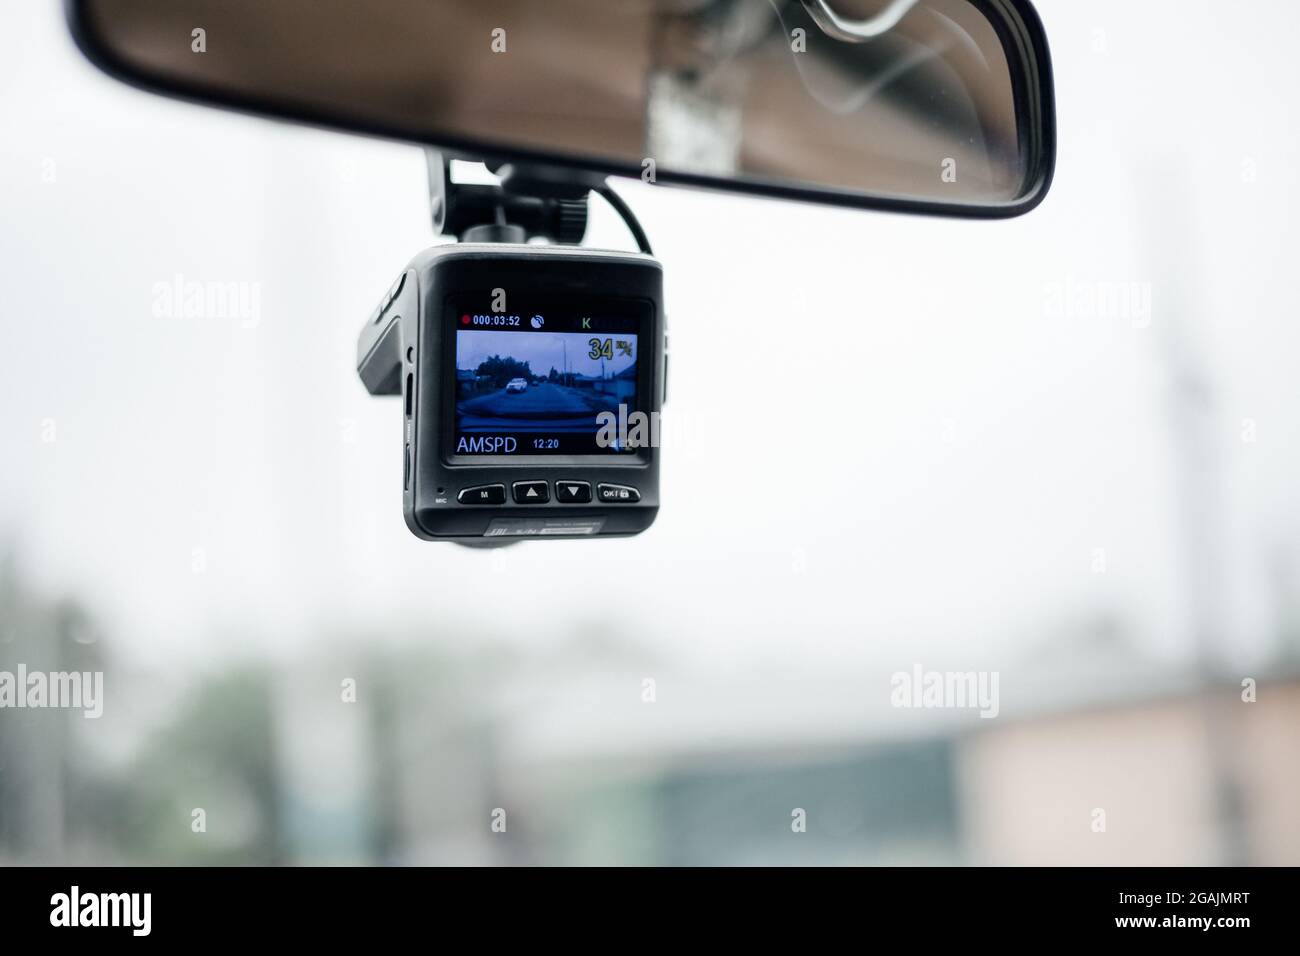 Enregistreur vidéo de voiture (caméra pour tableau de bord de voiture). Magnétoscope sous le miroir dans la voiture. Mise au point douce Banque D'Images